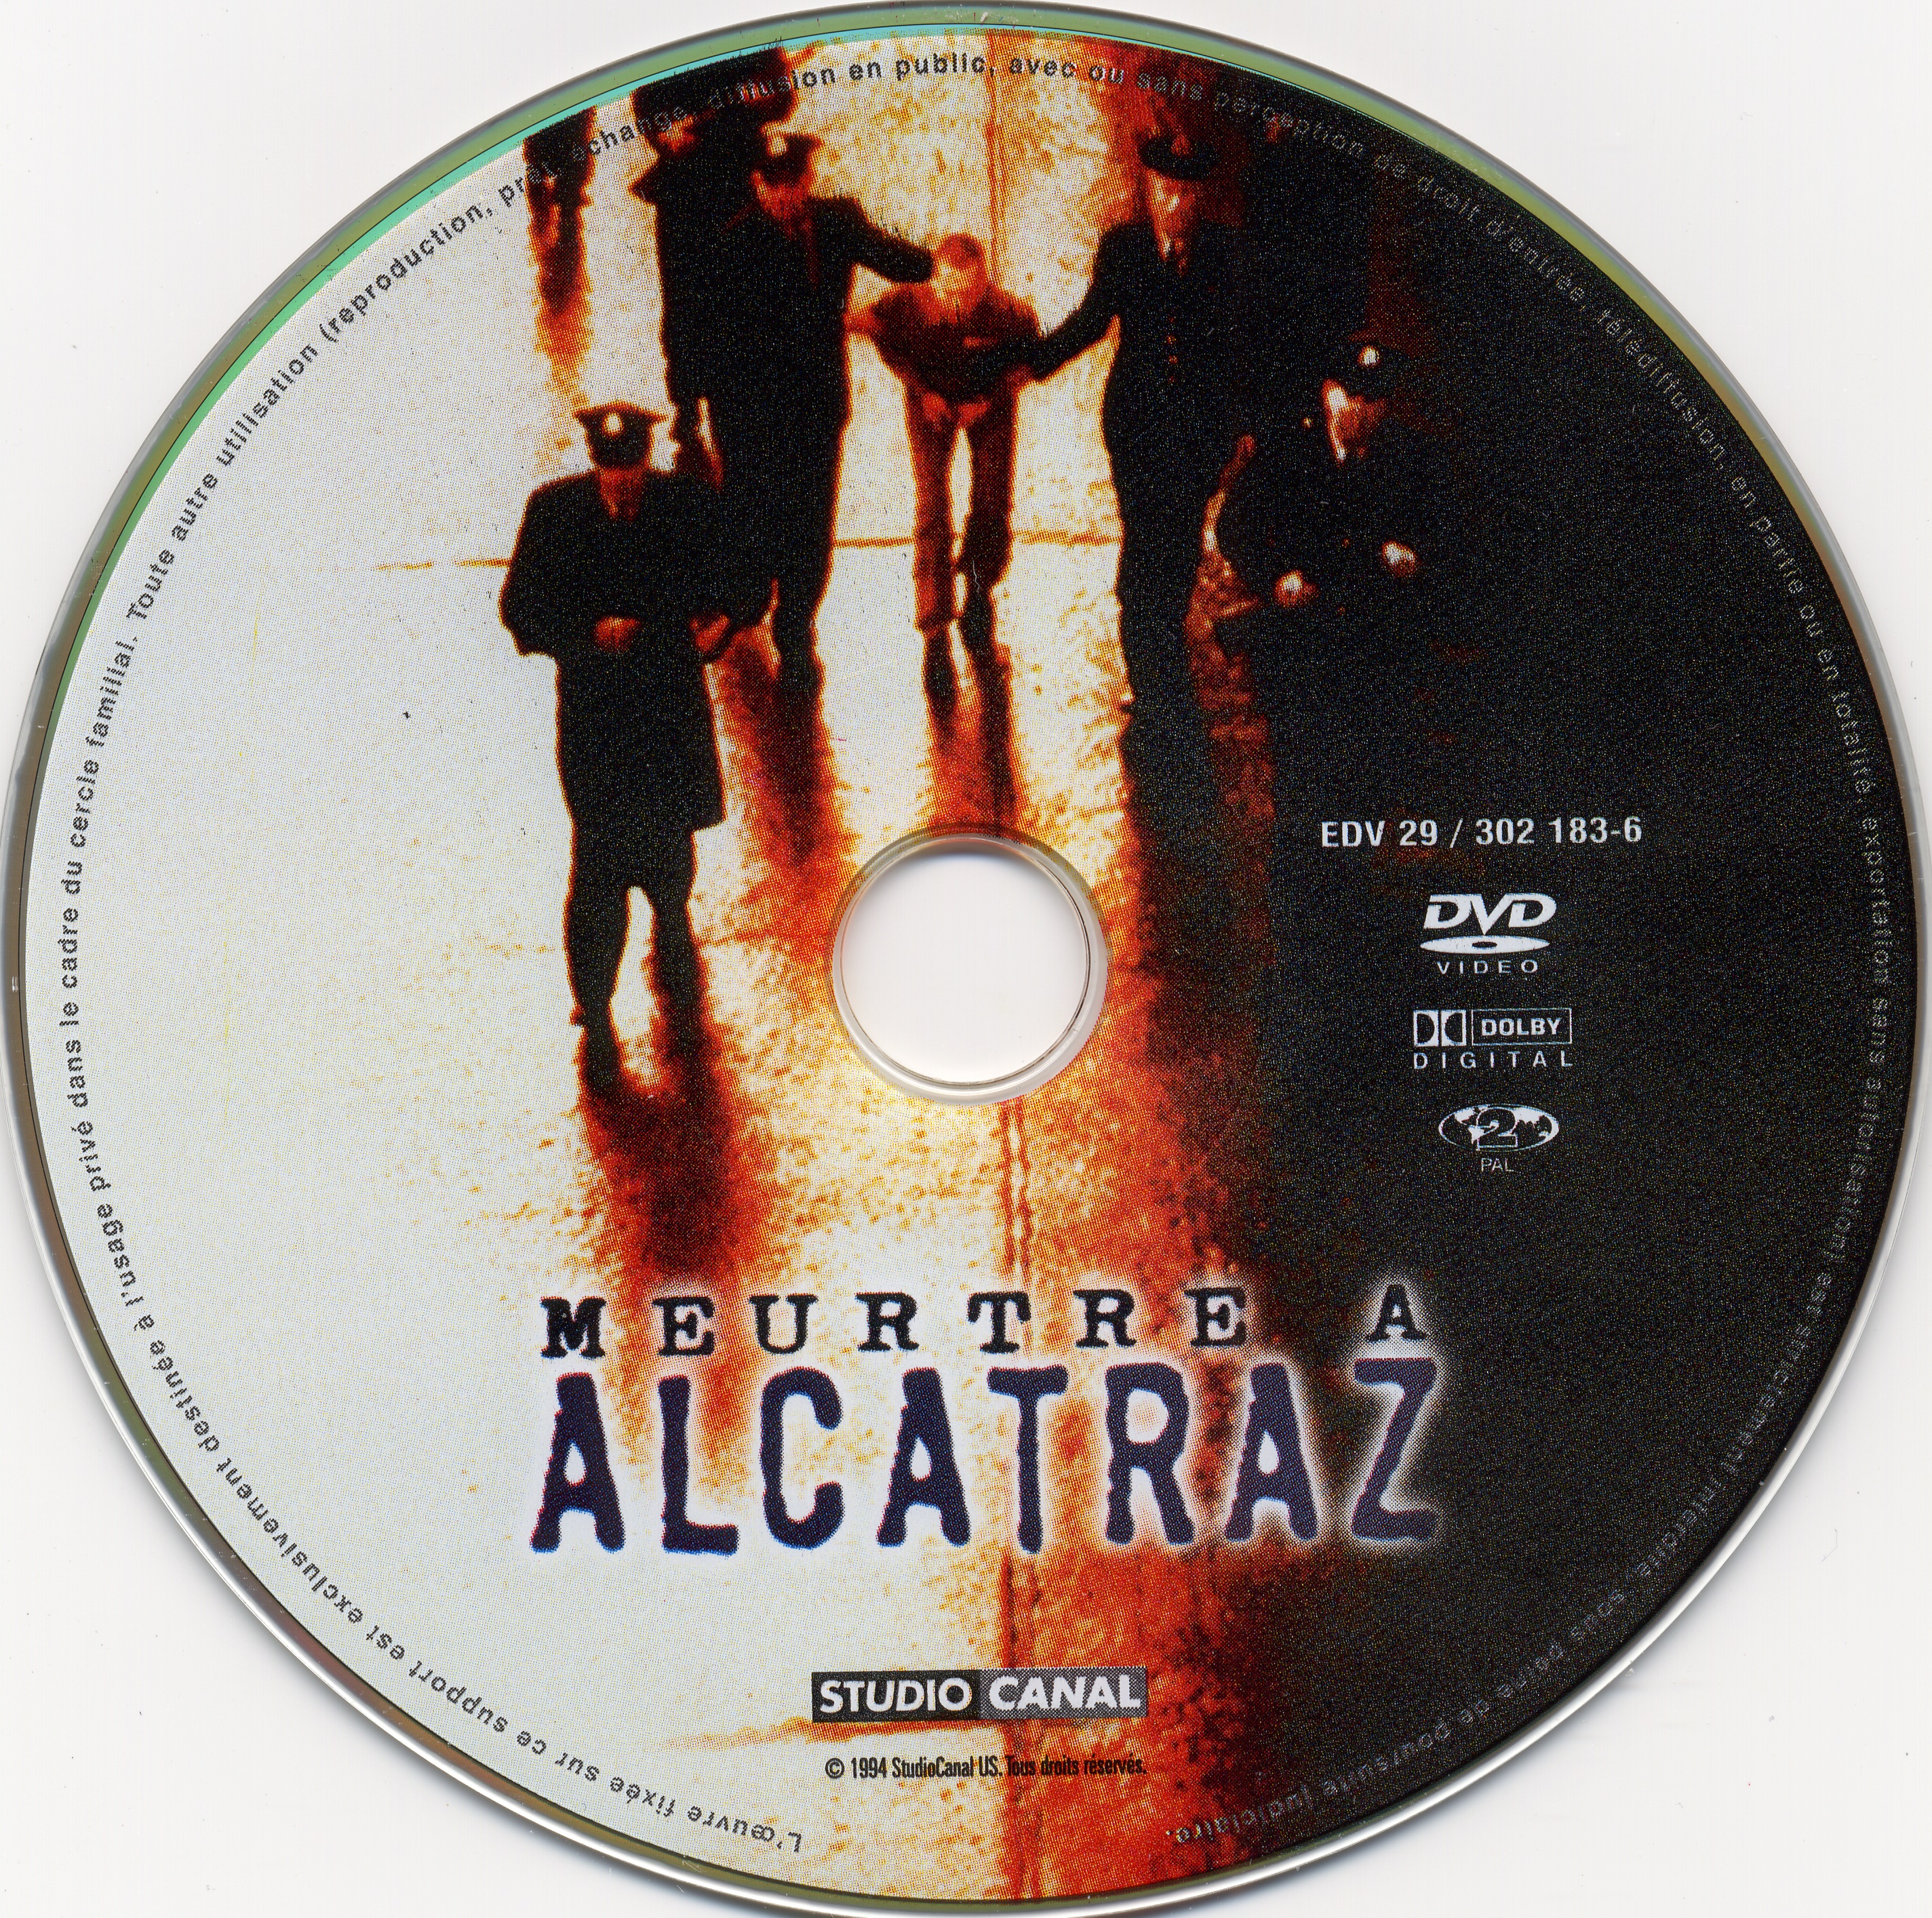 Meurtre a Alcatraz